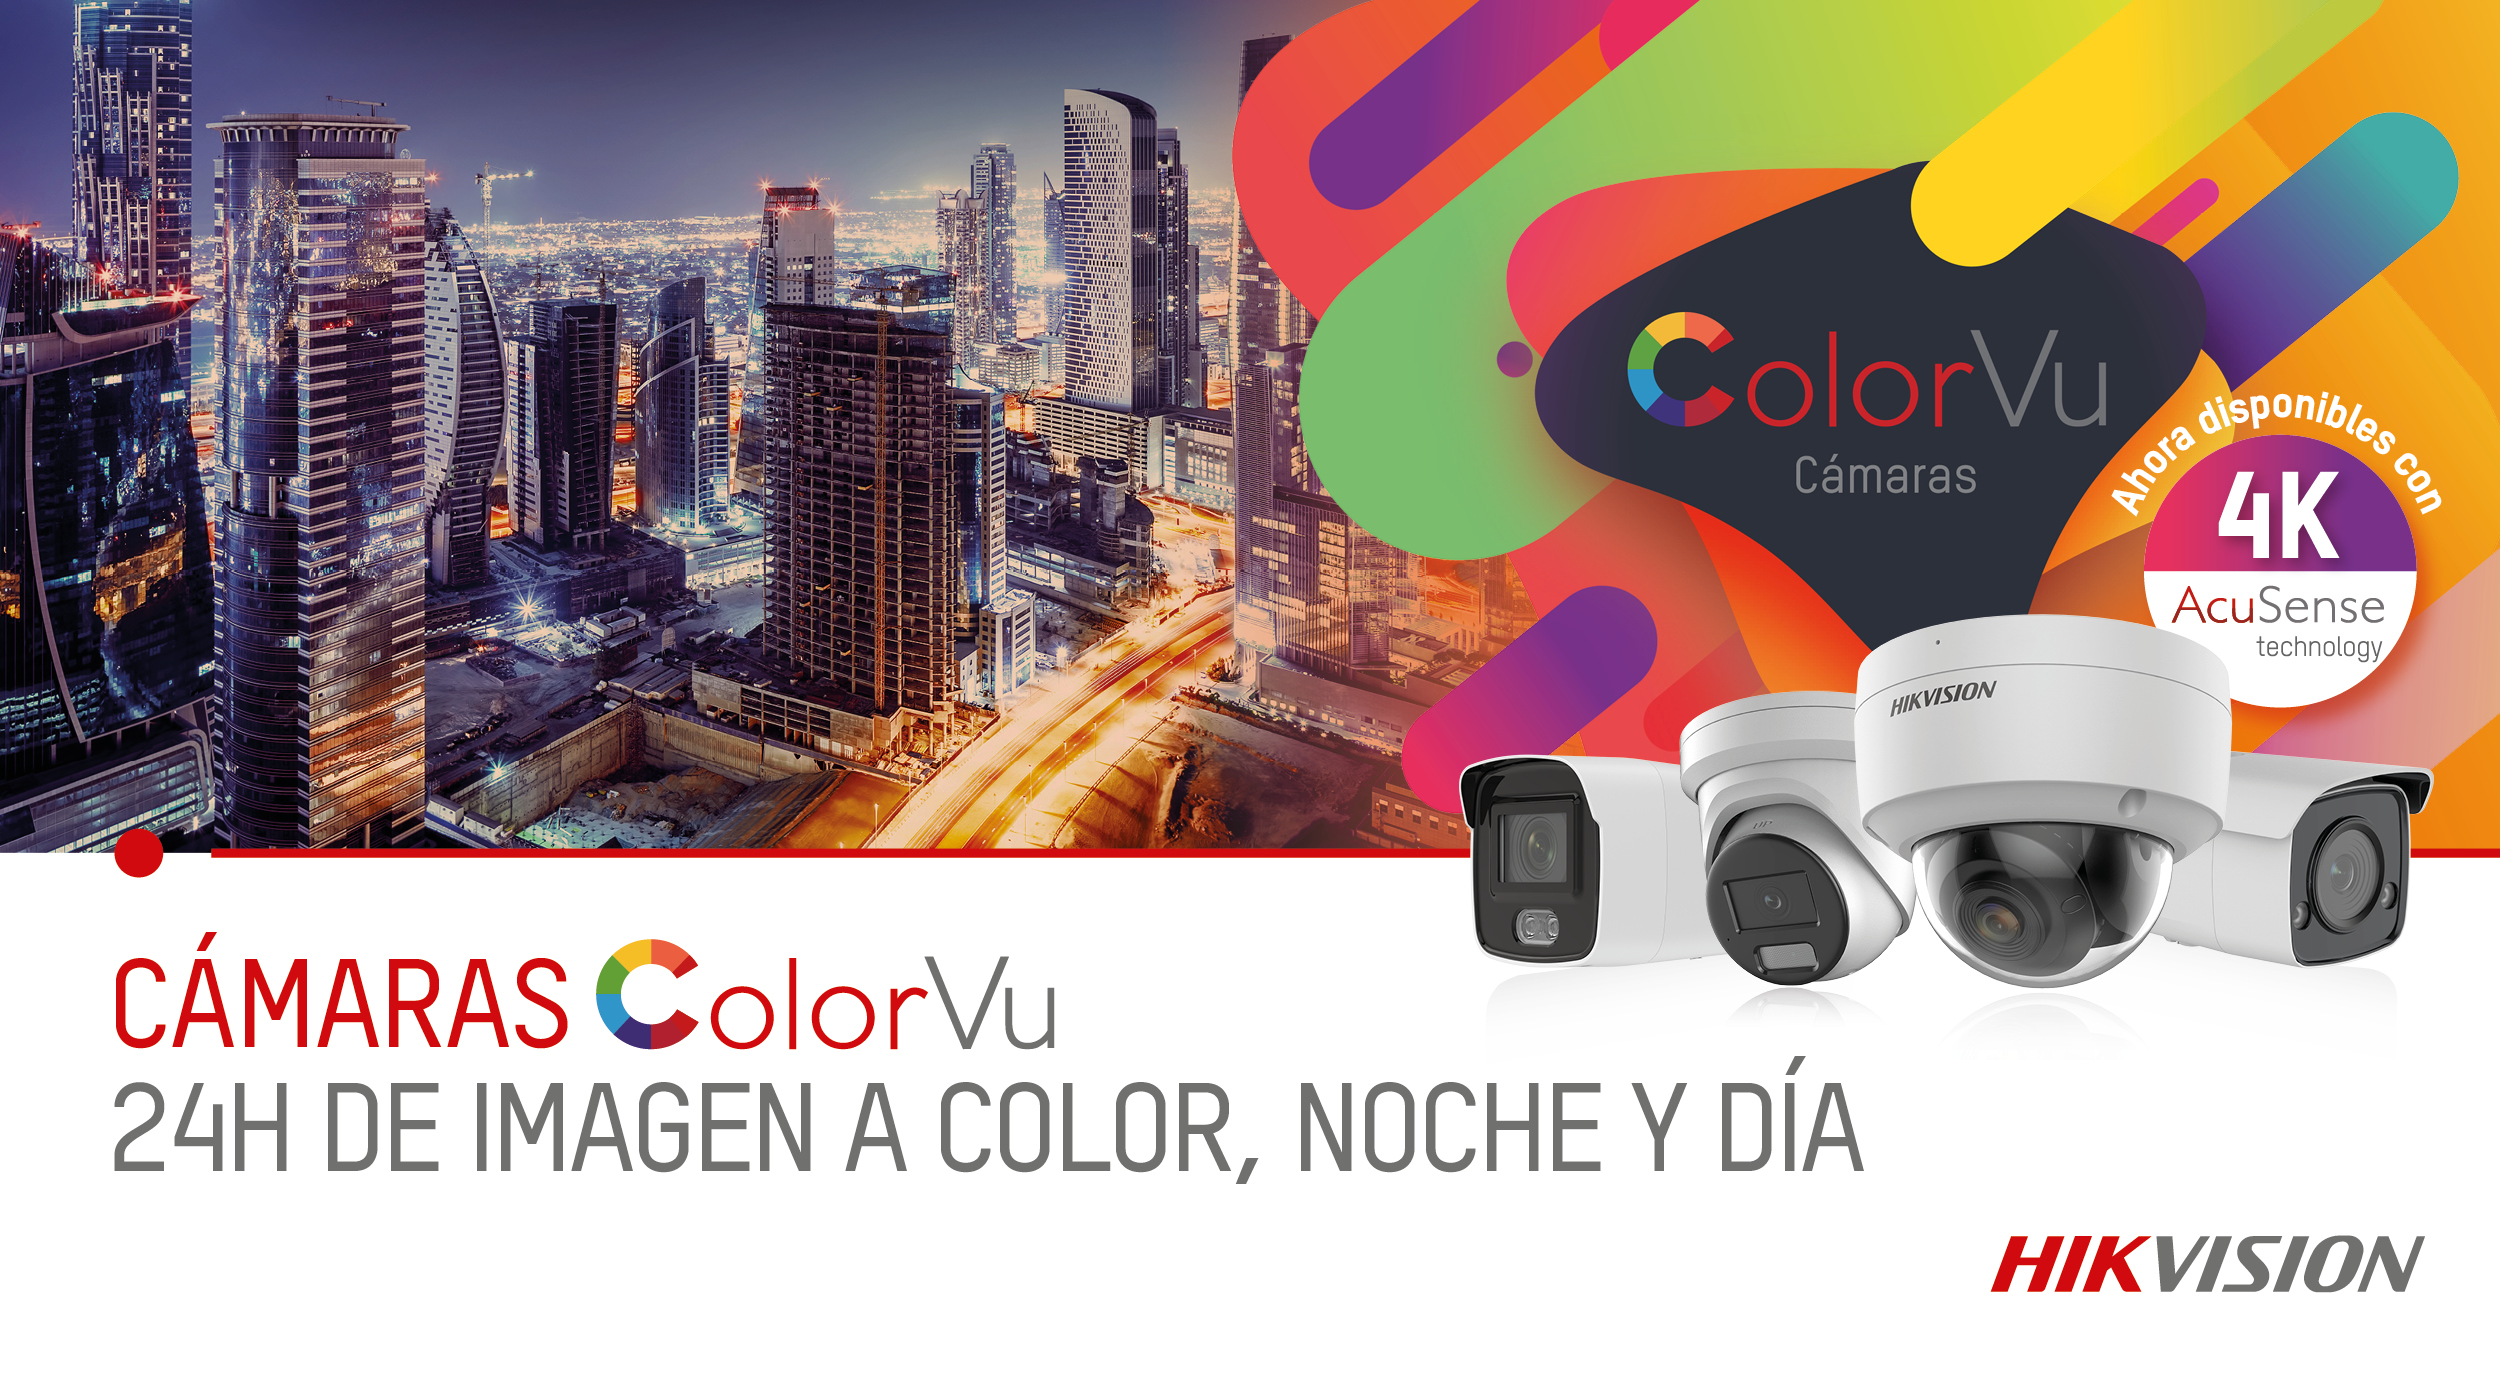 Nuevas cámaras ColorVu, ahora con tecnología AcuSense y 4K - 2021 - Hikvision